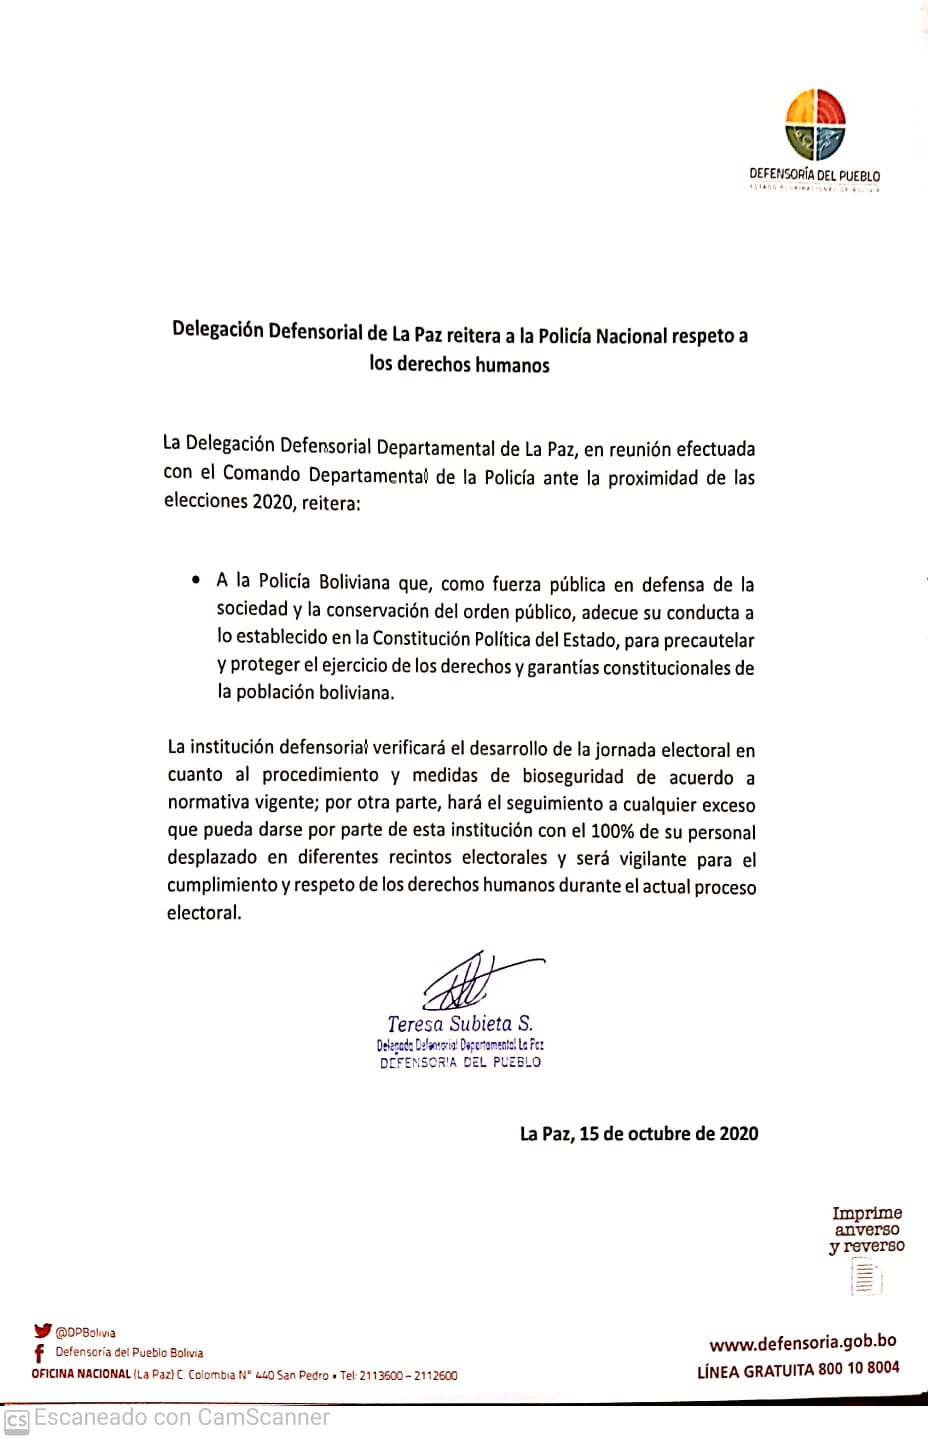 LA DELEGACION DEFENSORIAL DEPARTAMENTAL DE LA PAZ EMITE PRONUNCIAMIENTO HACIA LA POLICIA BOLIVIANA